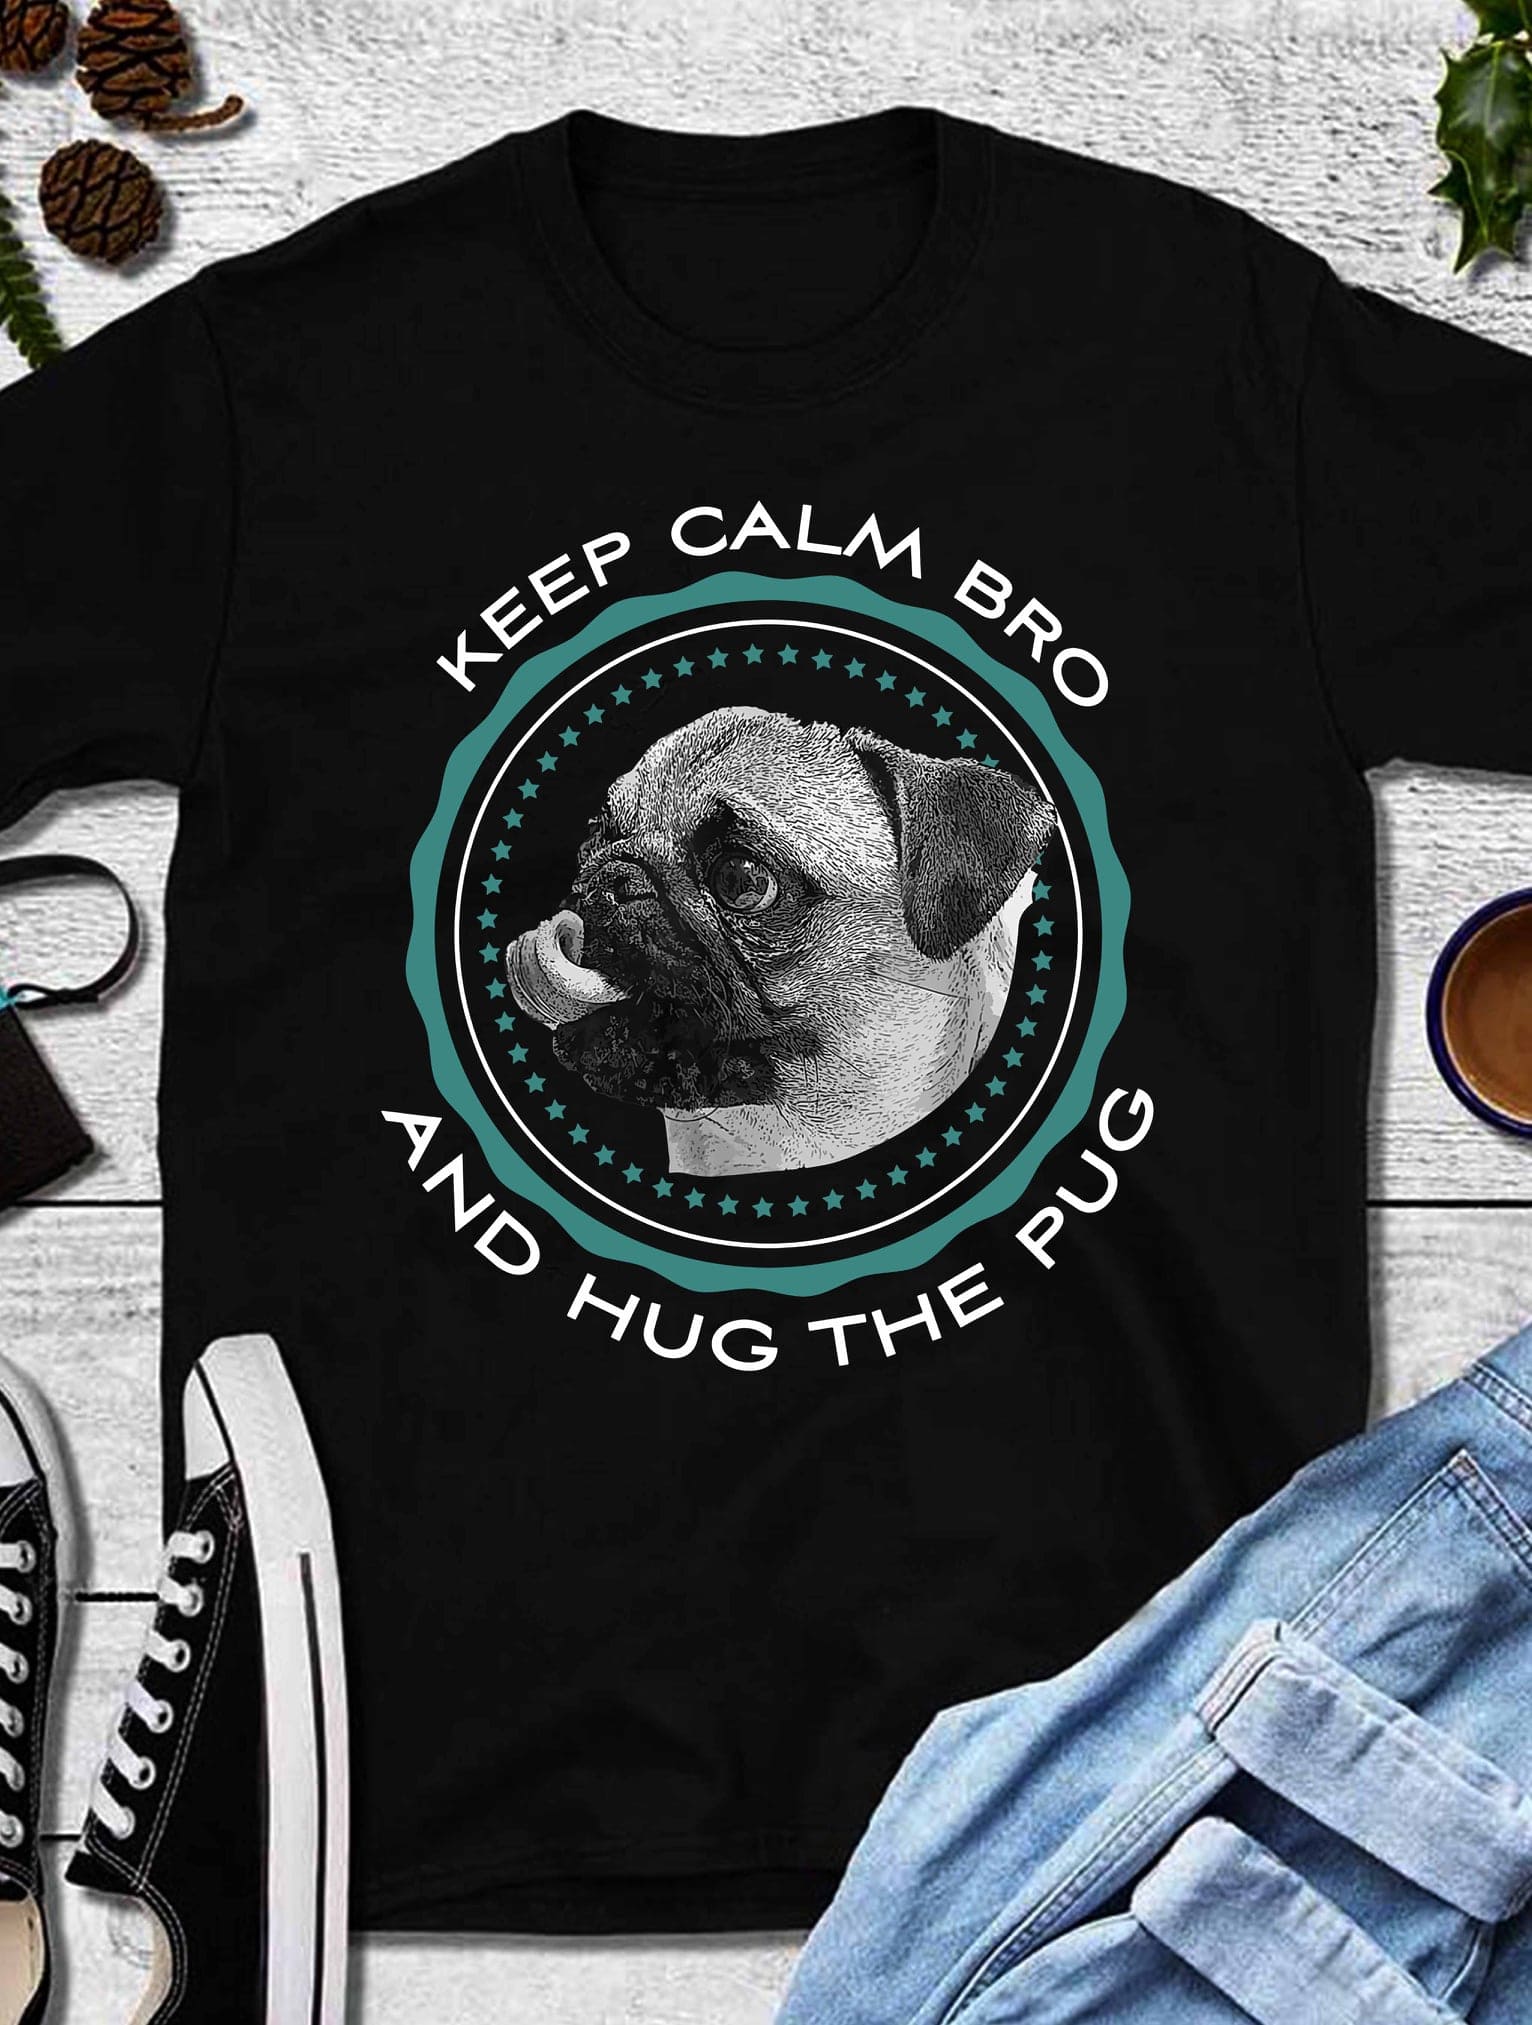 Keep calm bro and hug the pug - Pug dog graphic T-shirt